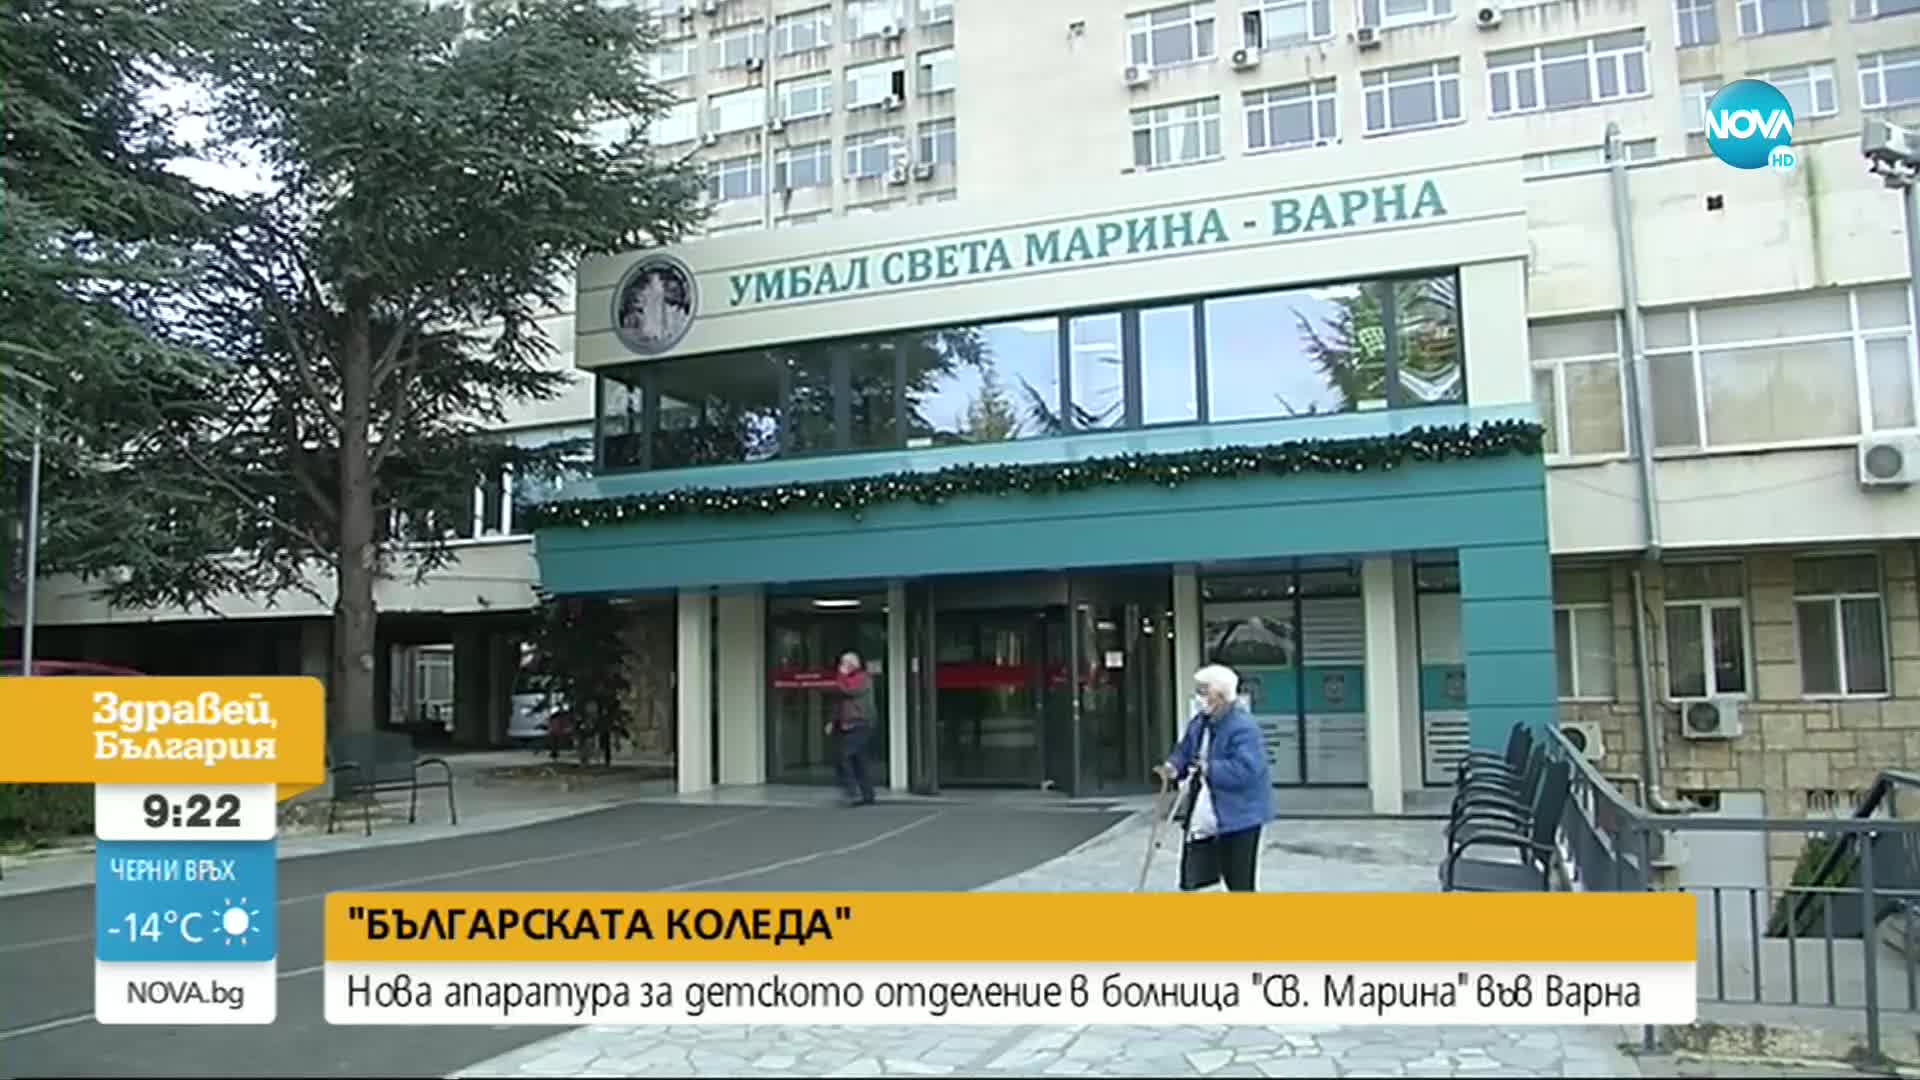 "БЪЛГАРСКАТА КОЛЕДА": Нова апаратура за детското отделение в болница "Св. Марина" във Варна